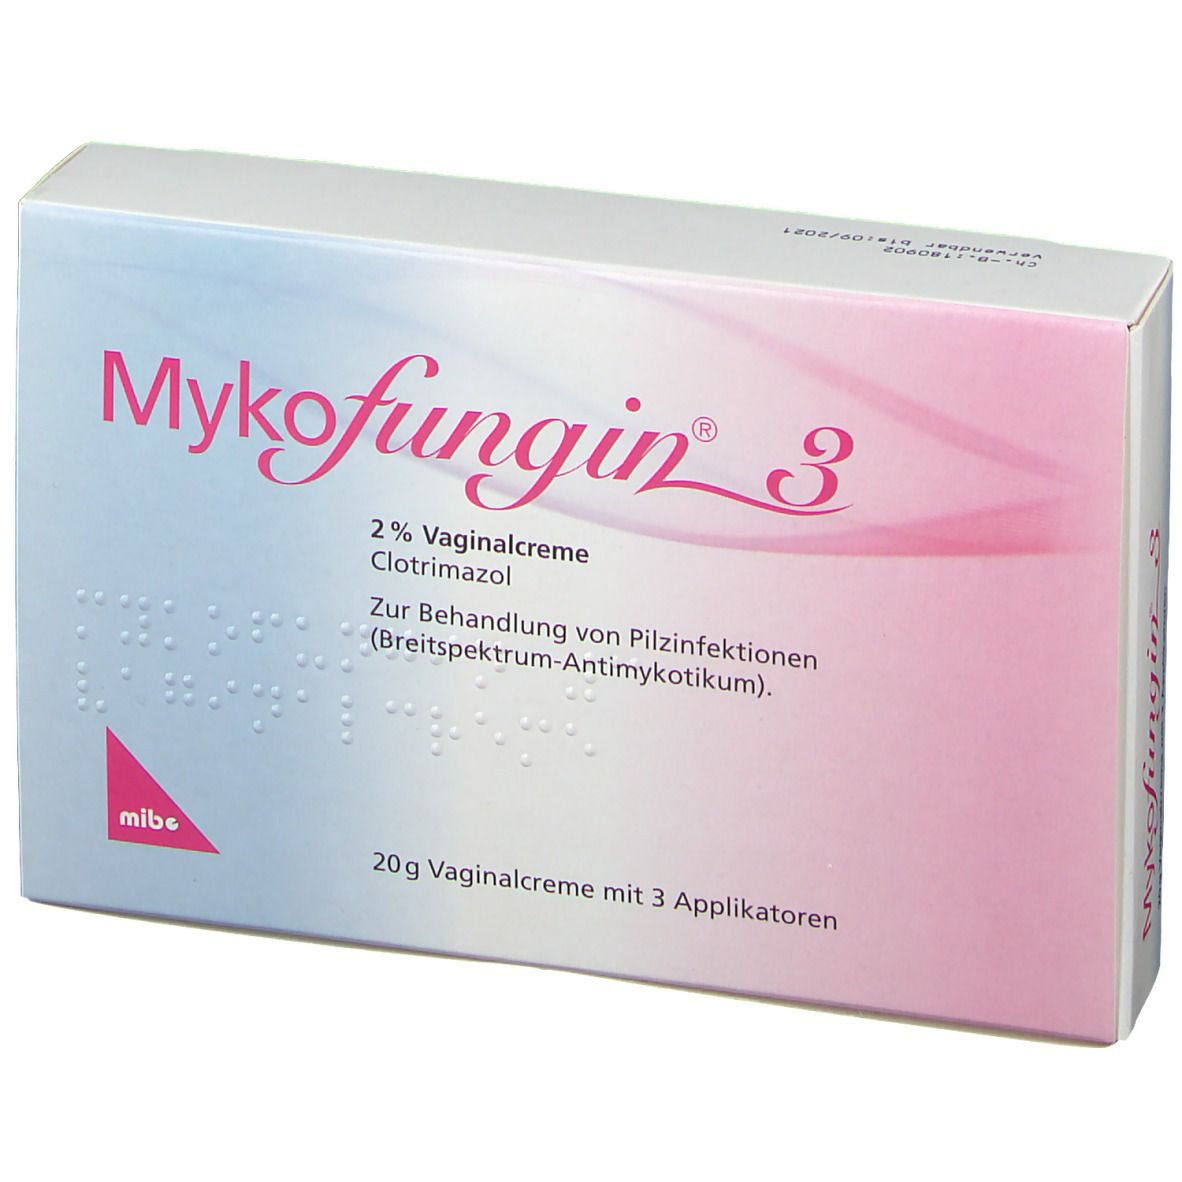 Mykofungin® 3, 2% Vaginalcreme